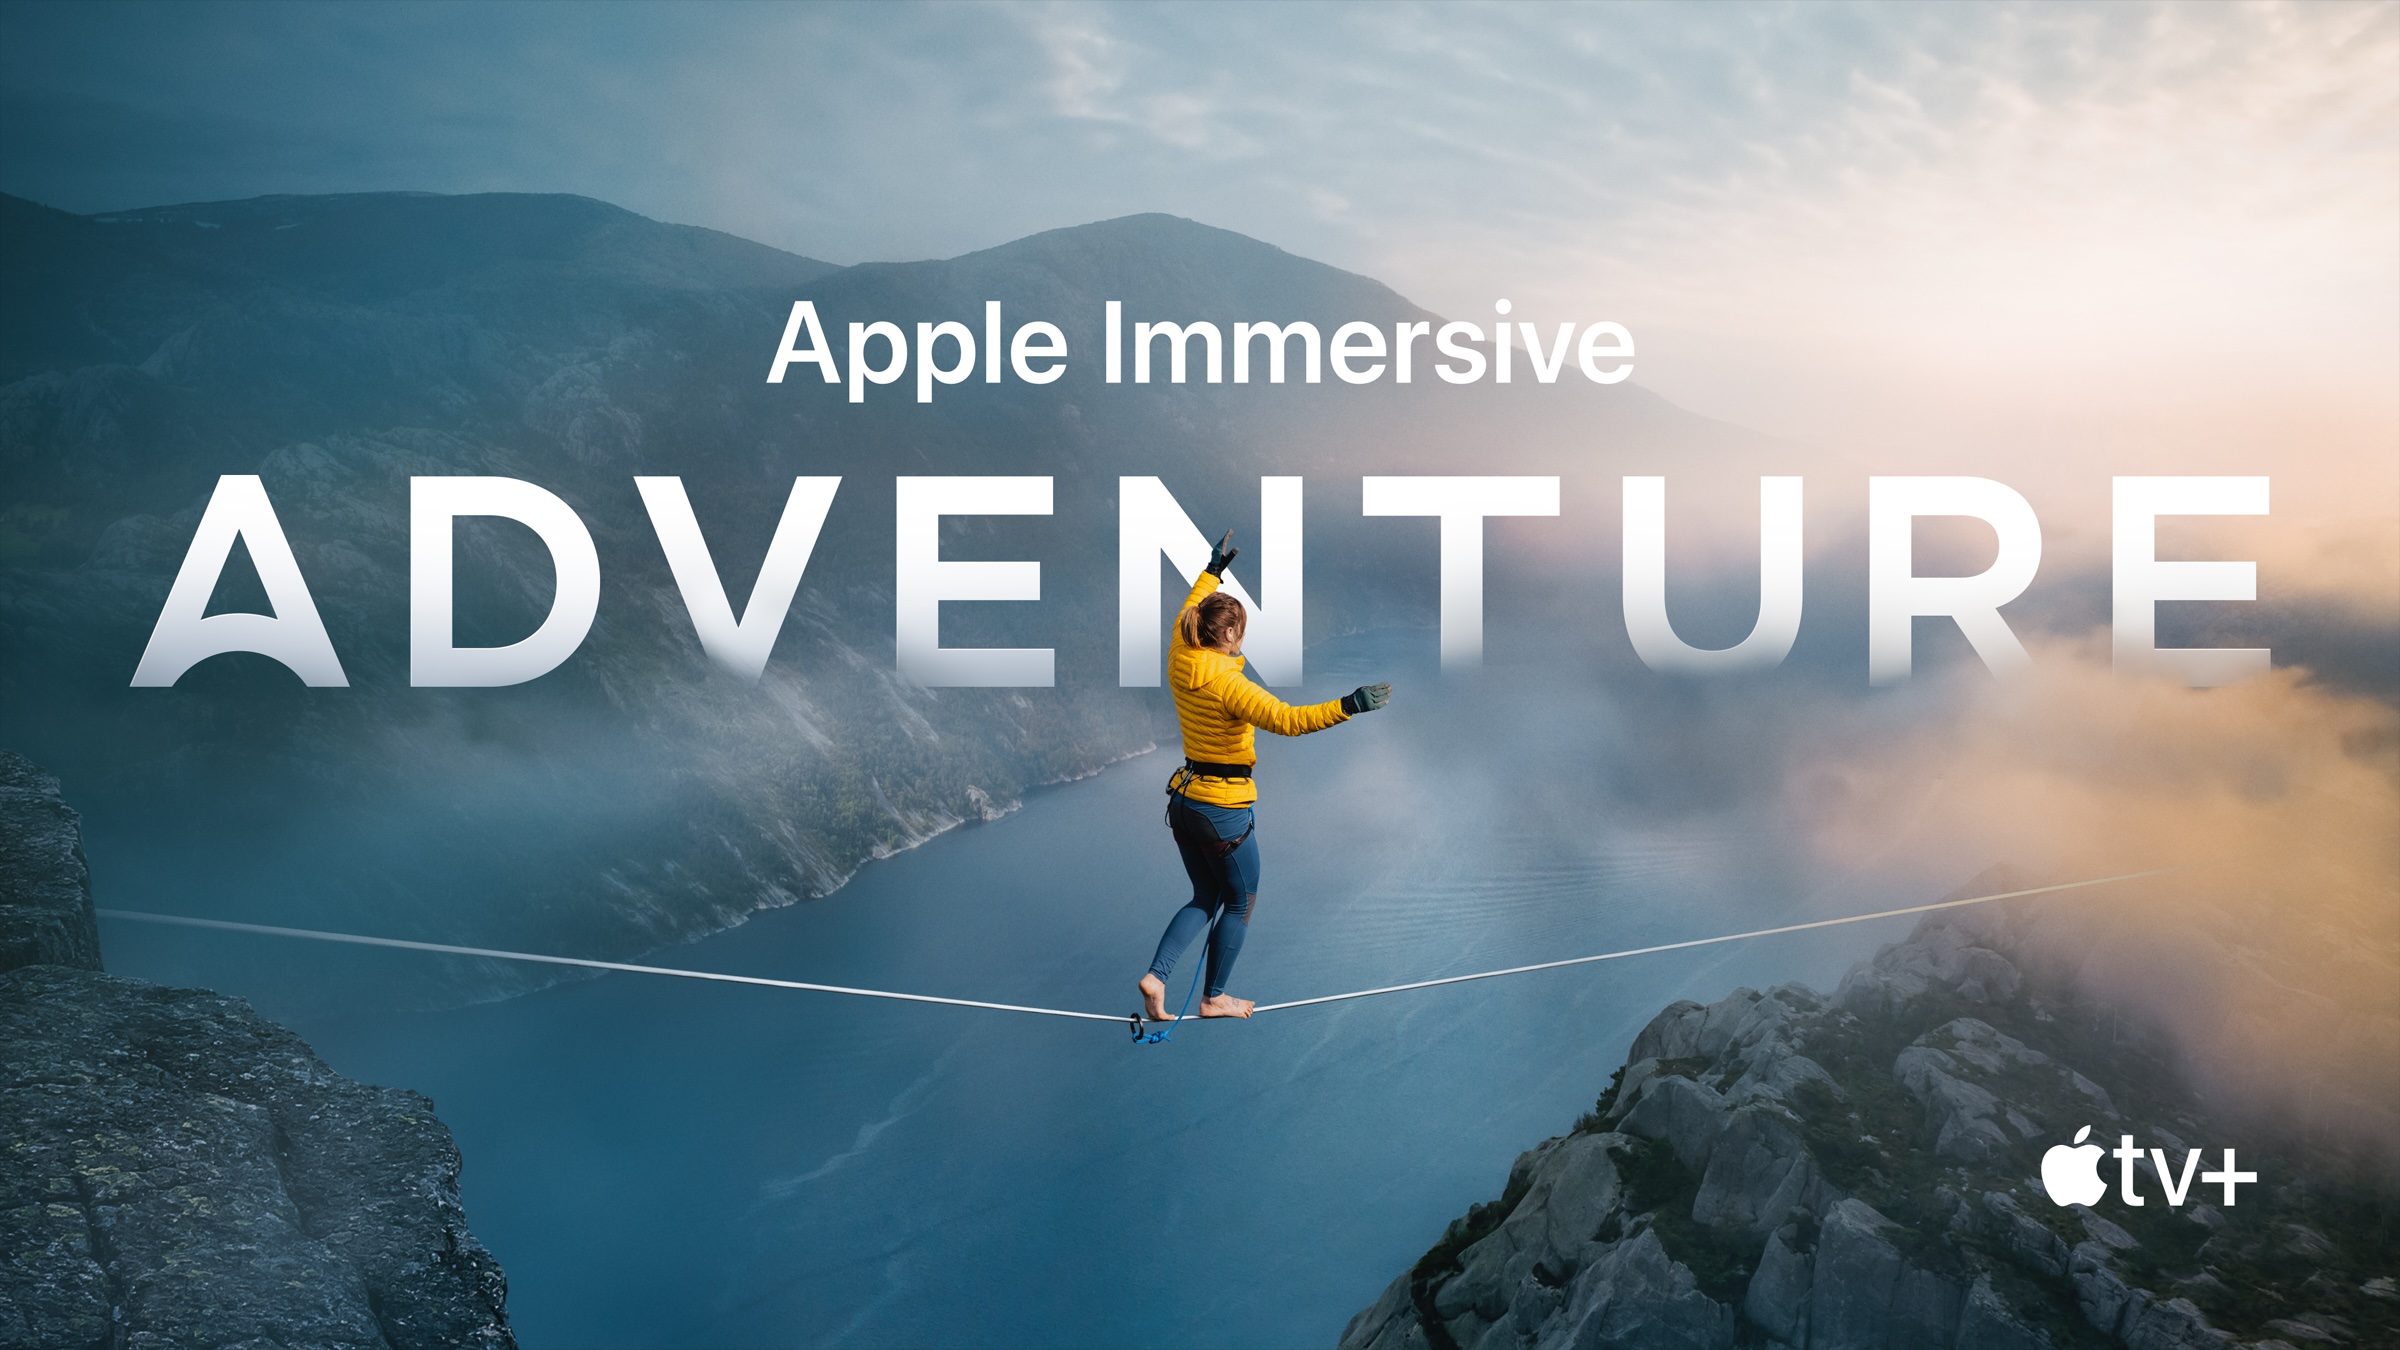 Vidéo immersive Apple Vision Pro sur Apple TV+